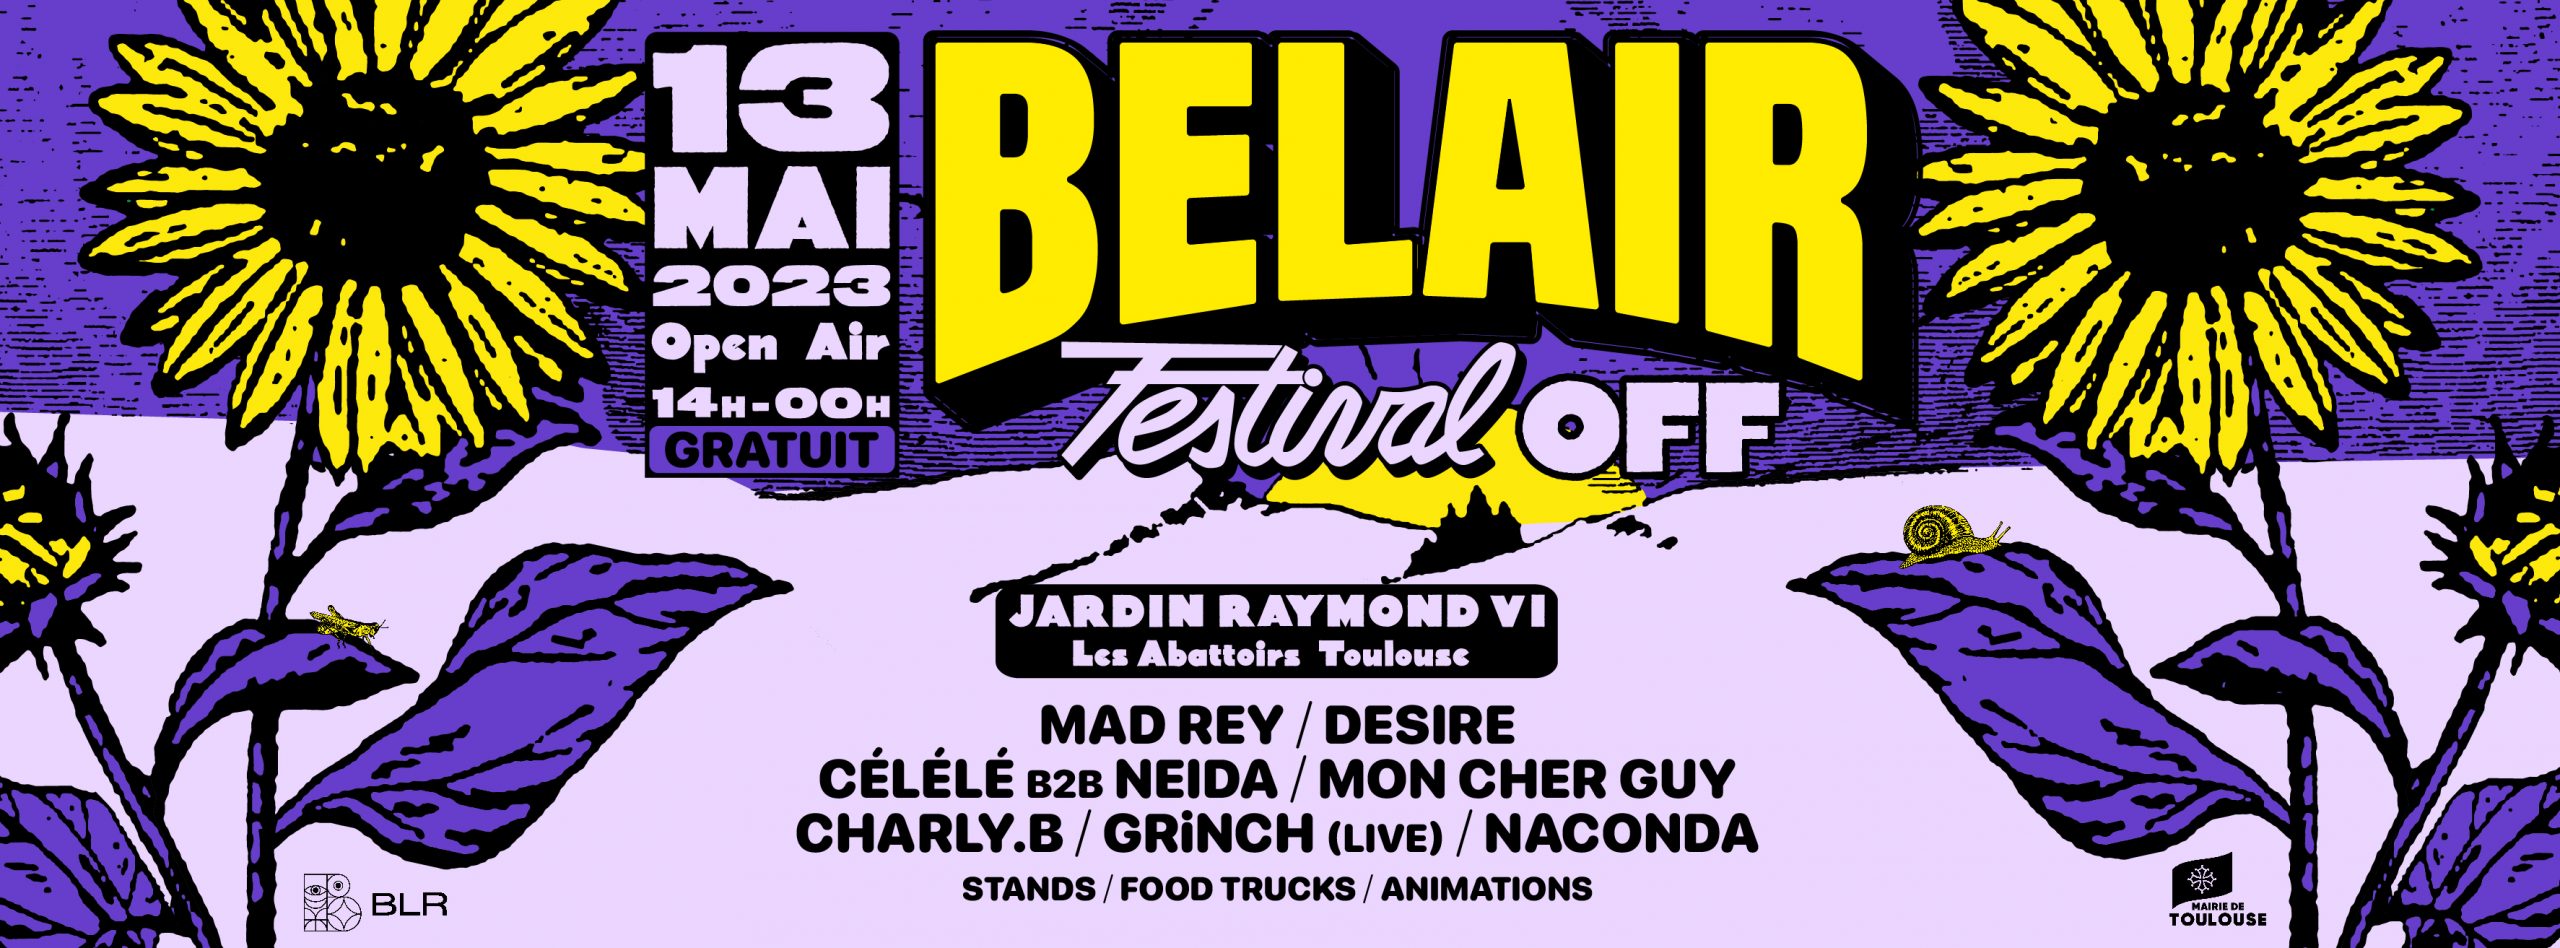 Le Bel Air Festival